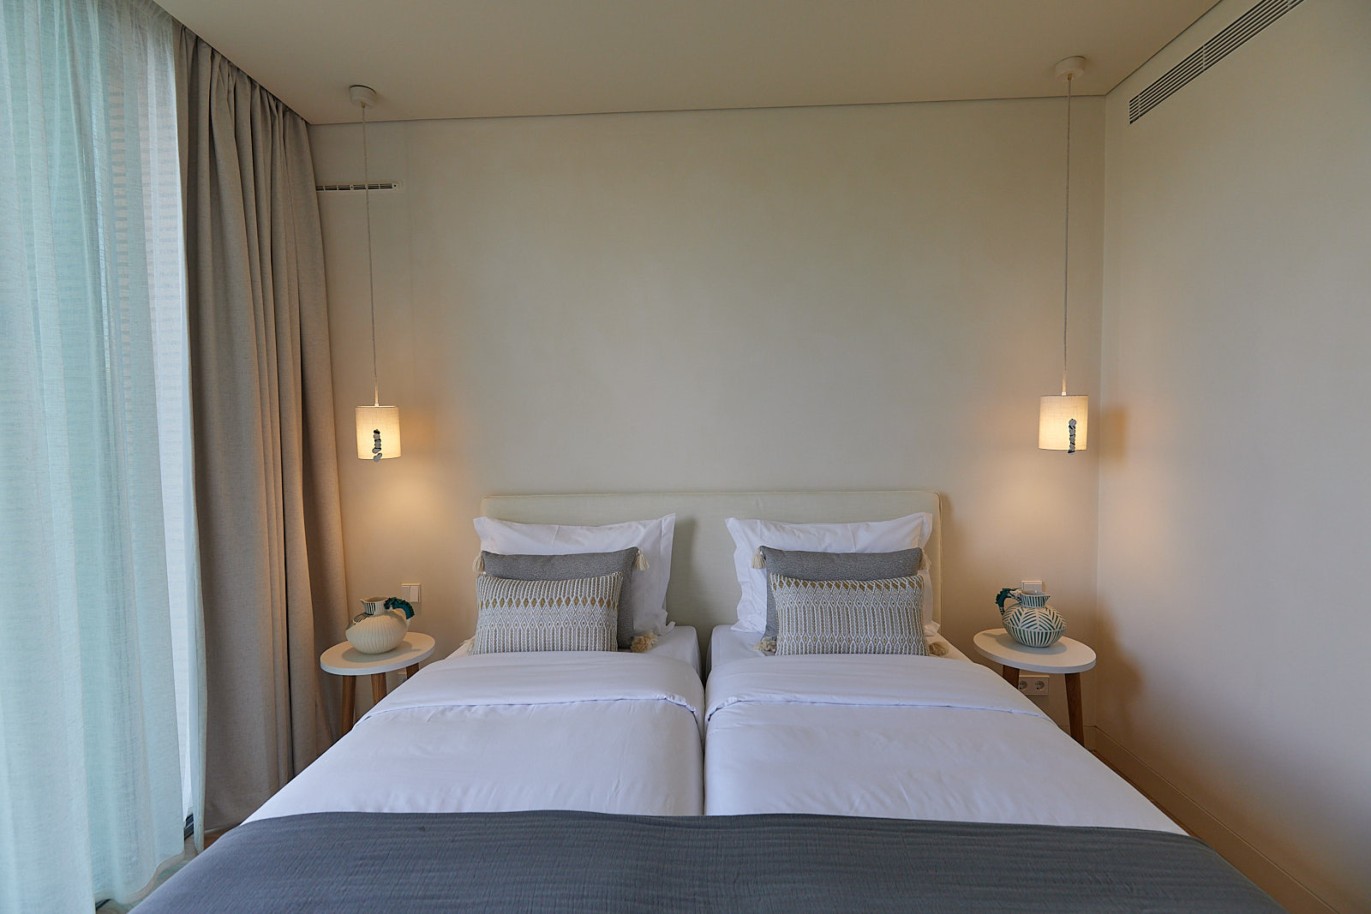 3 bedroom flat in resort, for sale in Porches, Algarve_230737